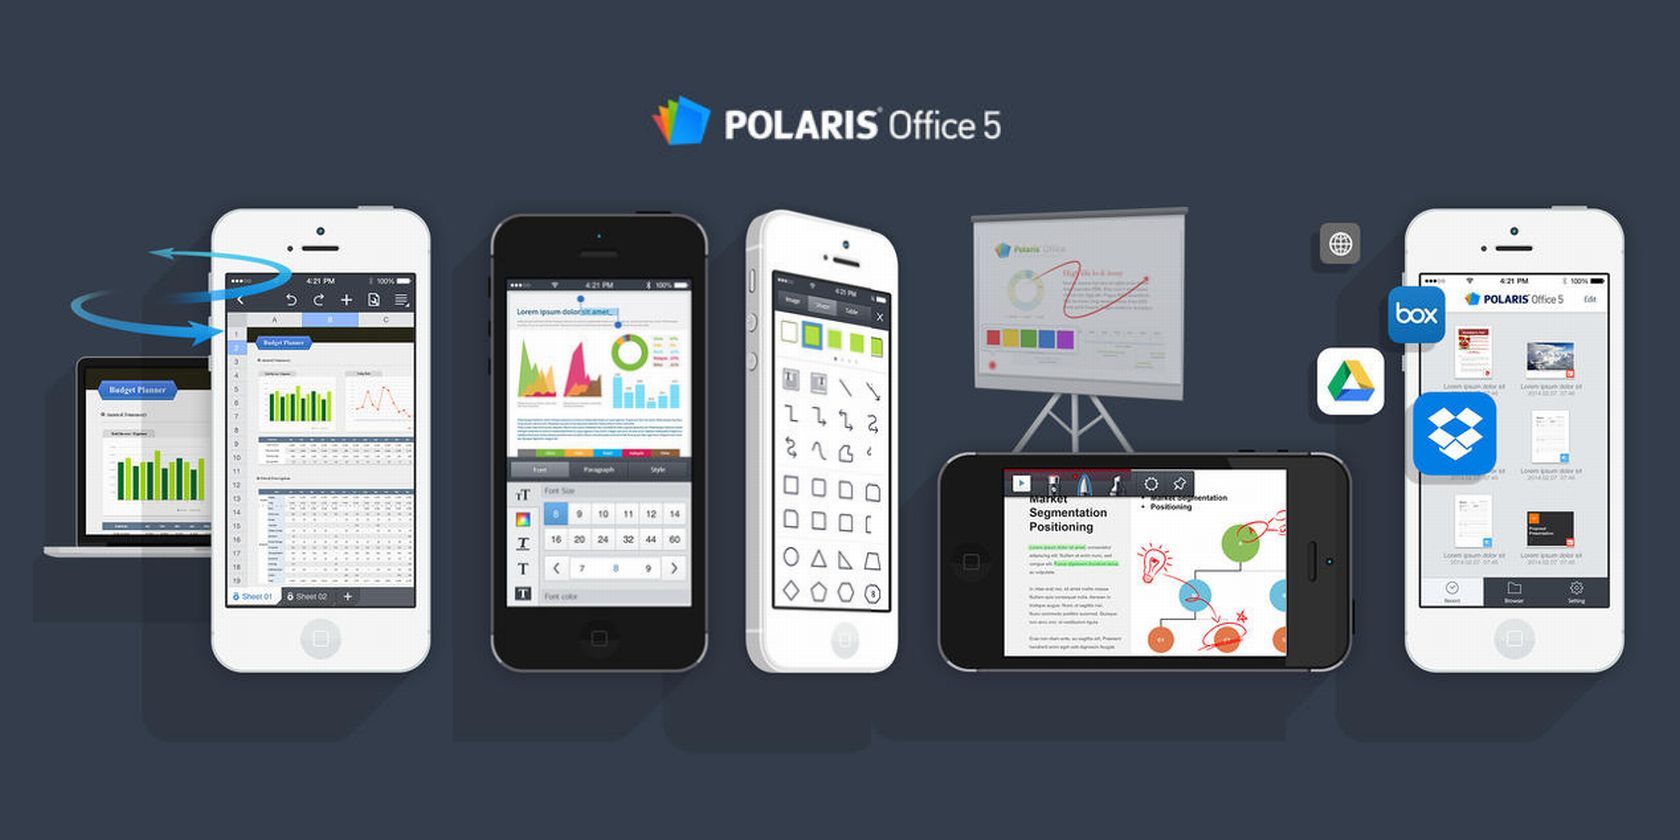 polaris office 5 update